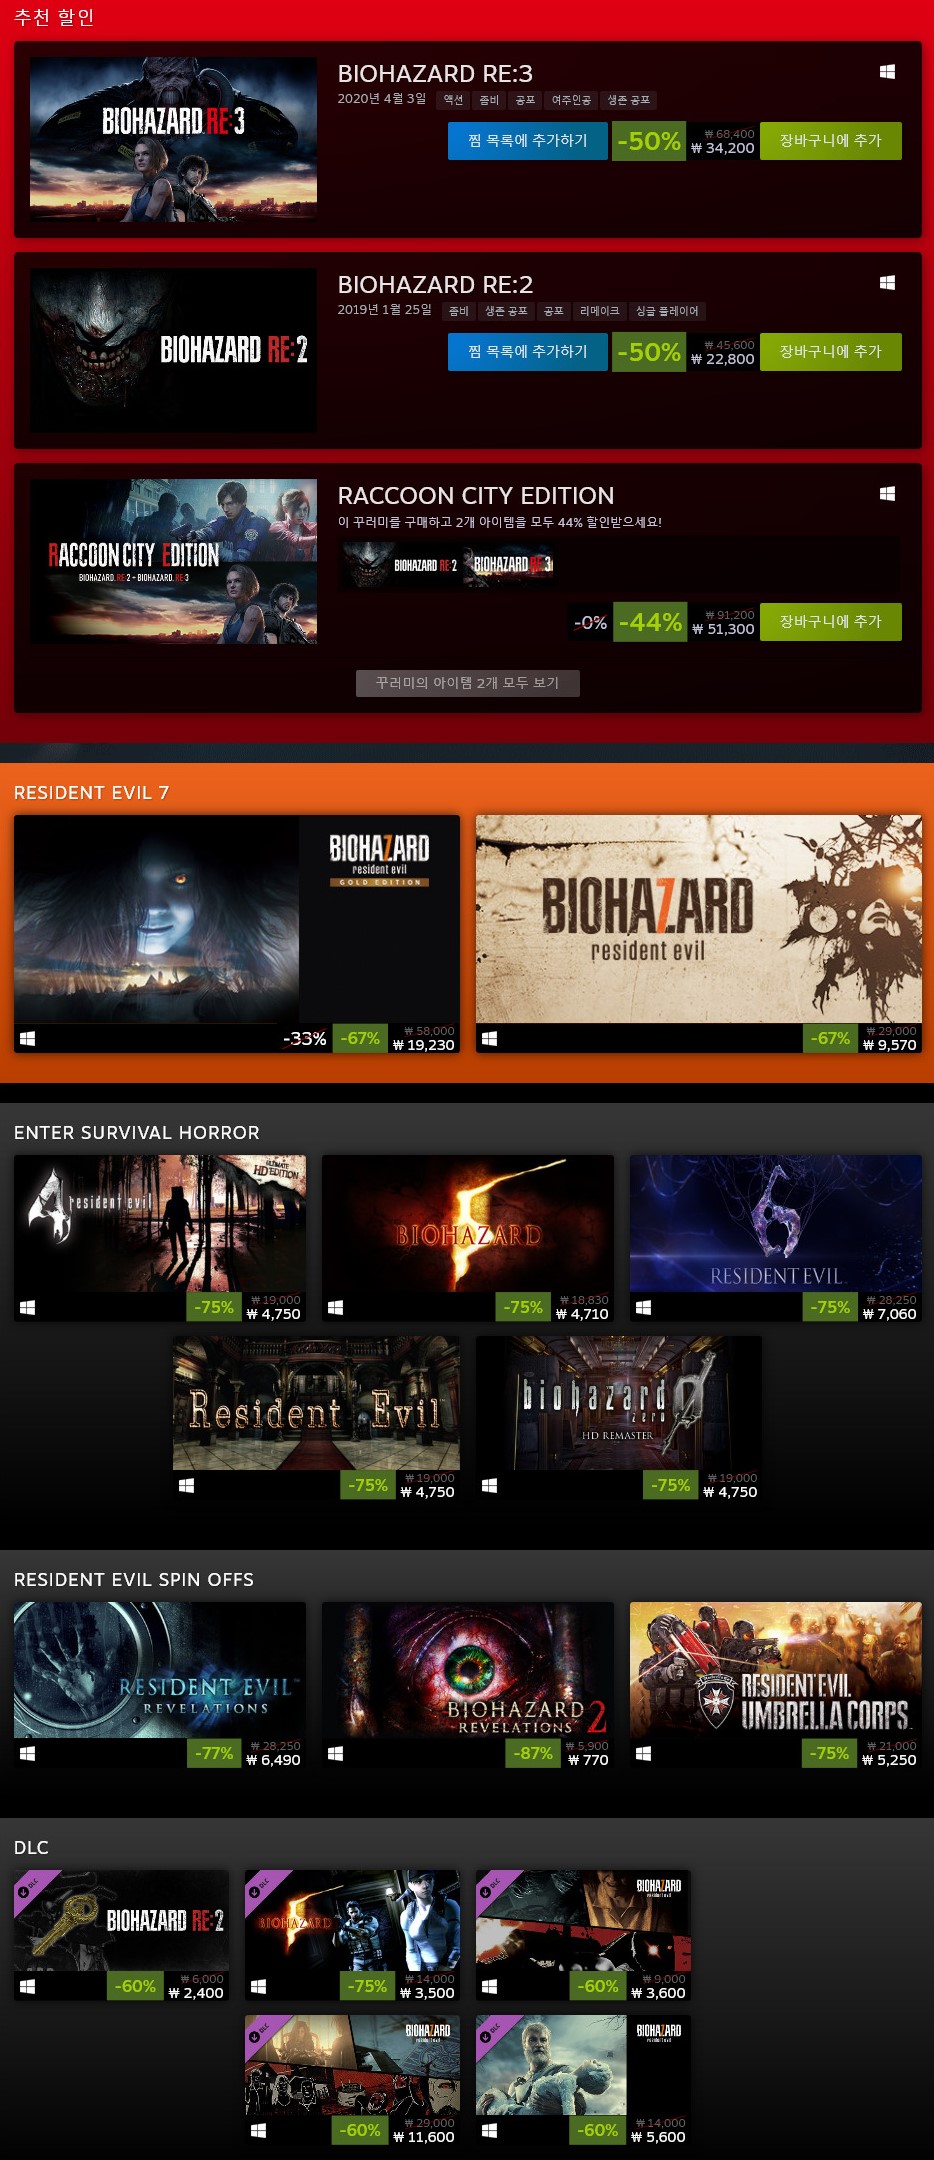 Screenshot_2020-09-18 Resident Evil Franchise Sale.jpg